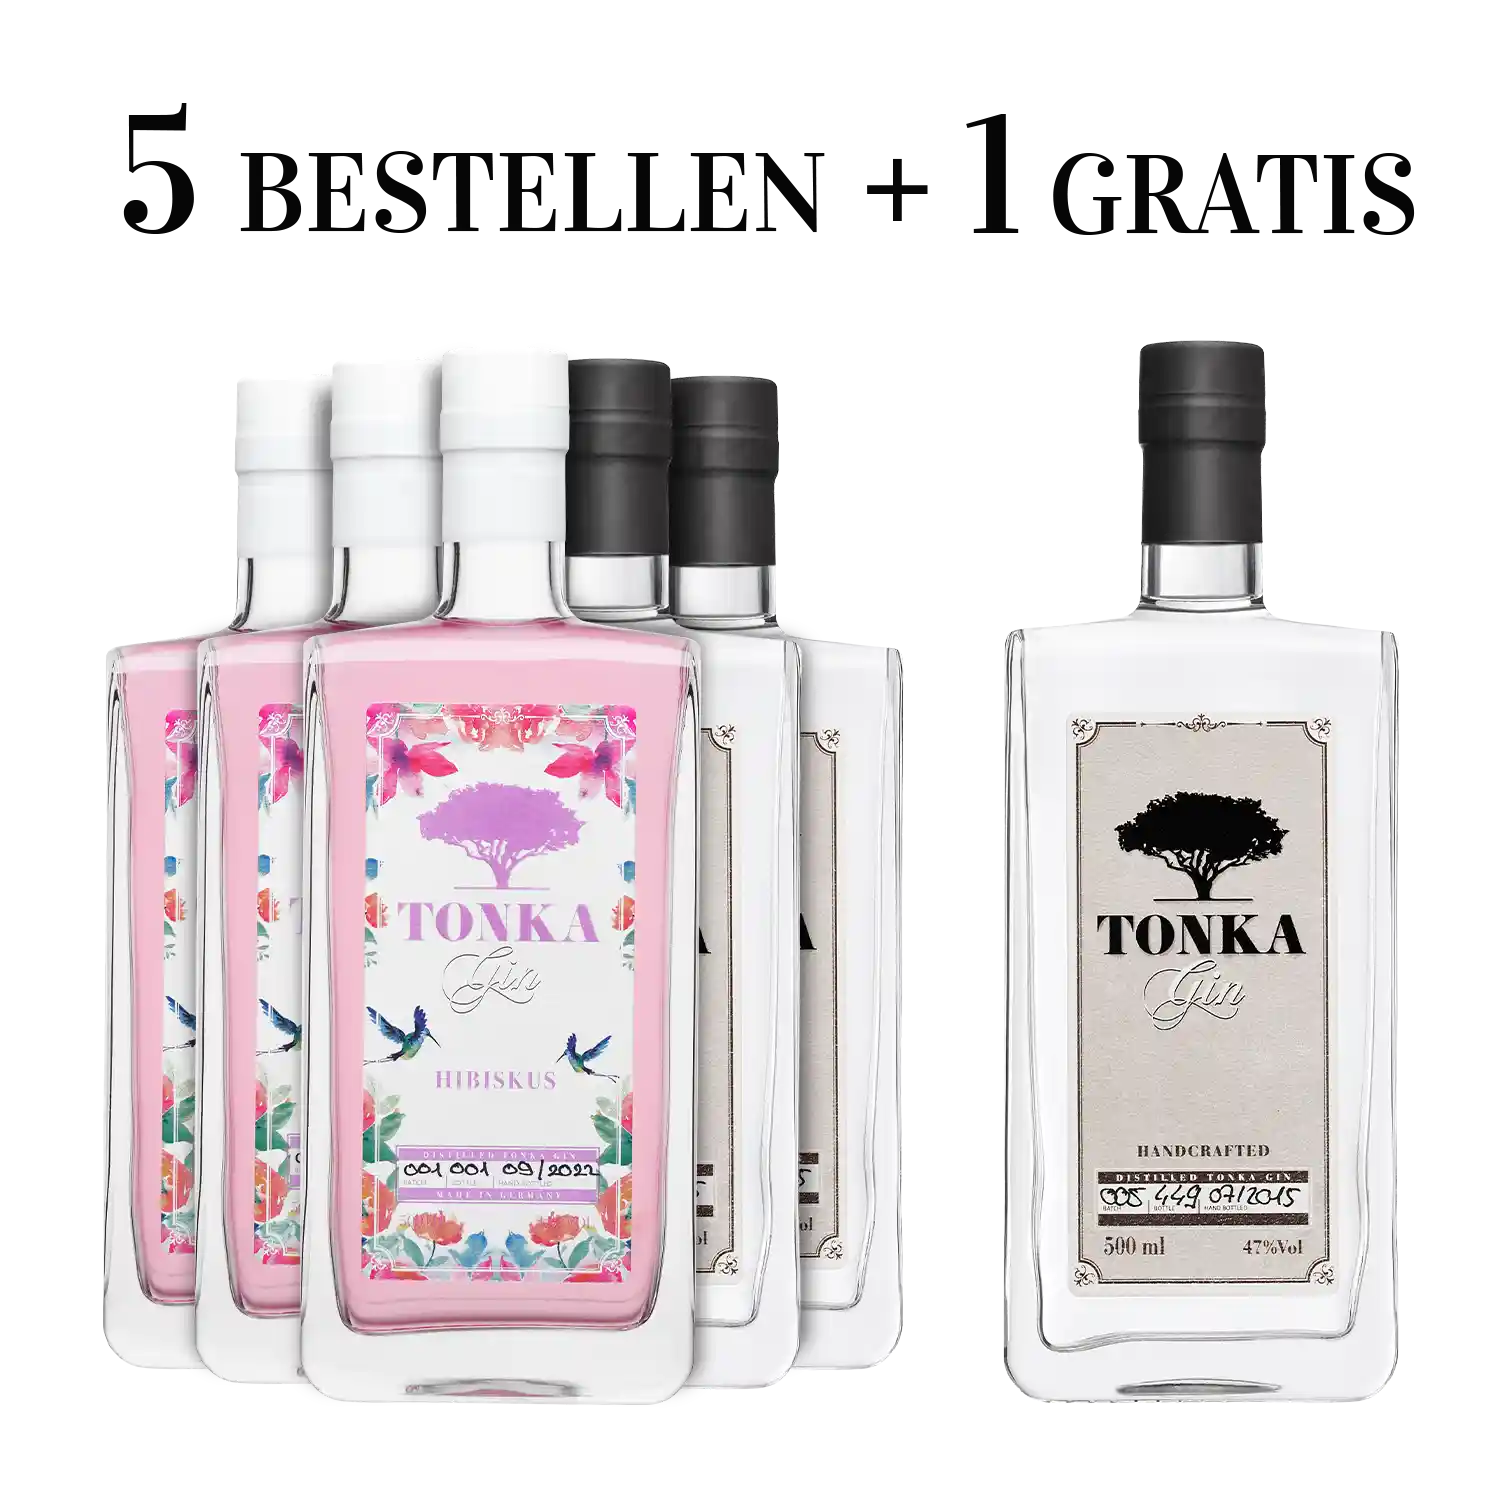 Eine Flasche gratis! | Tonka Gin Vorteilspaket | Klassik & Hibiskus –  Spirituosenliebhaber